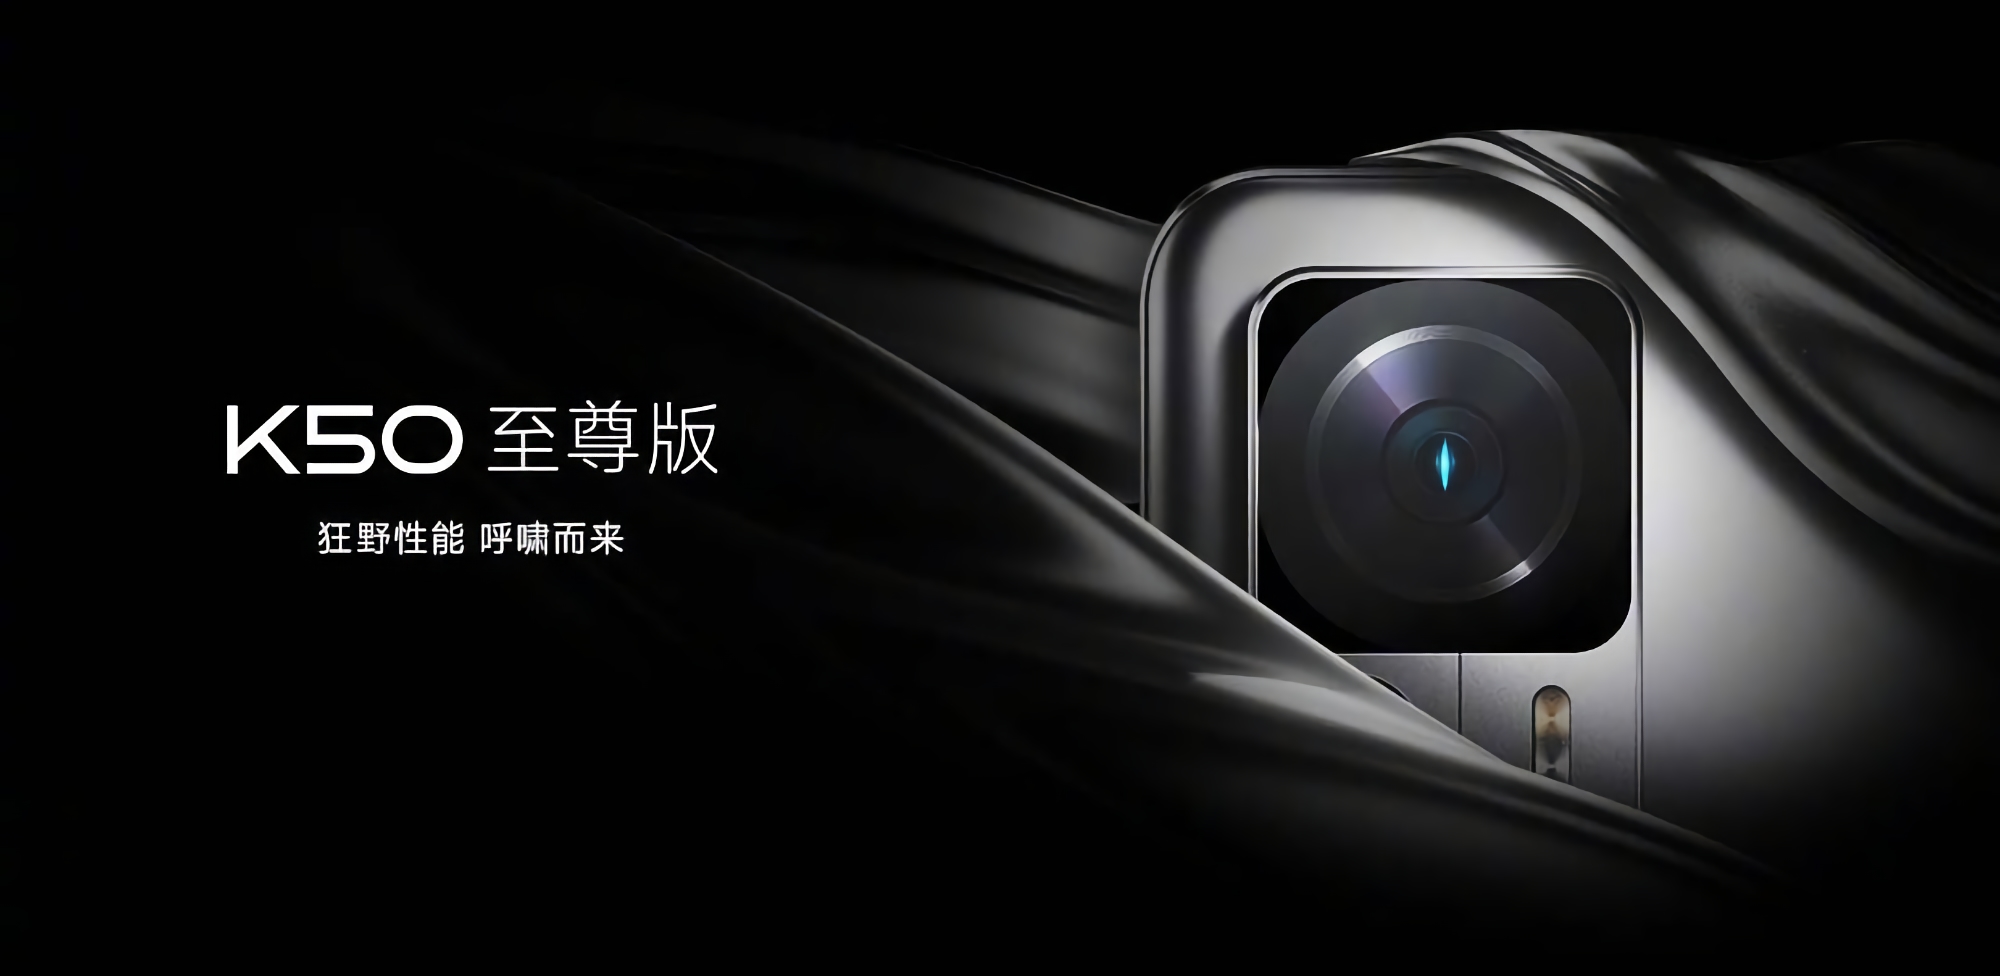 Xiaomi révèle quand il dévoilera le smartphone Redmi K50 Ultra avec un appareil photo de 108 MP et une puce Snapdragon 8+ Gen 1